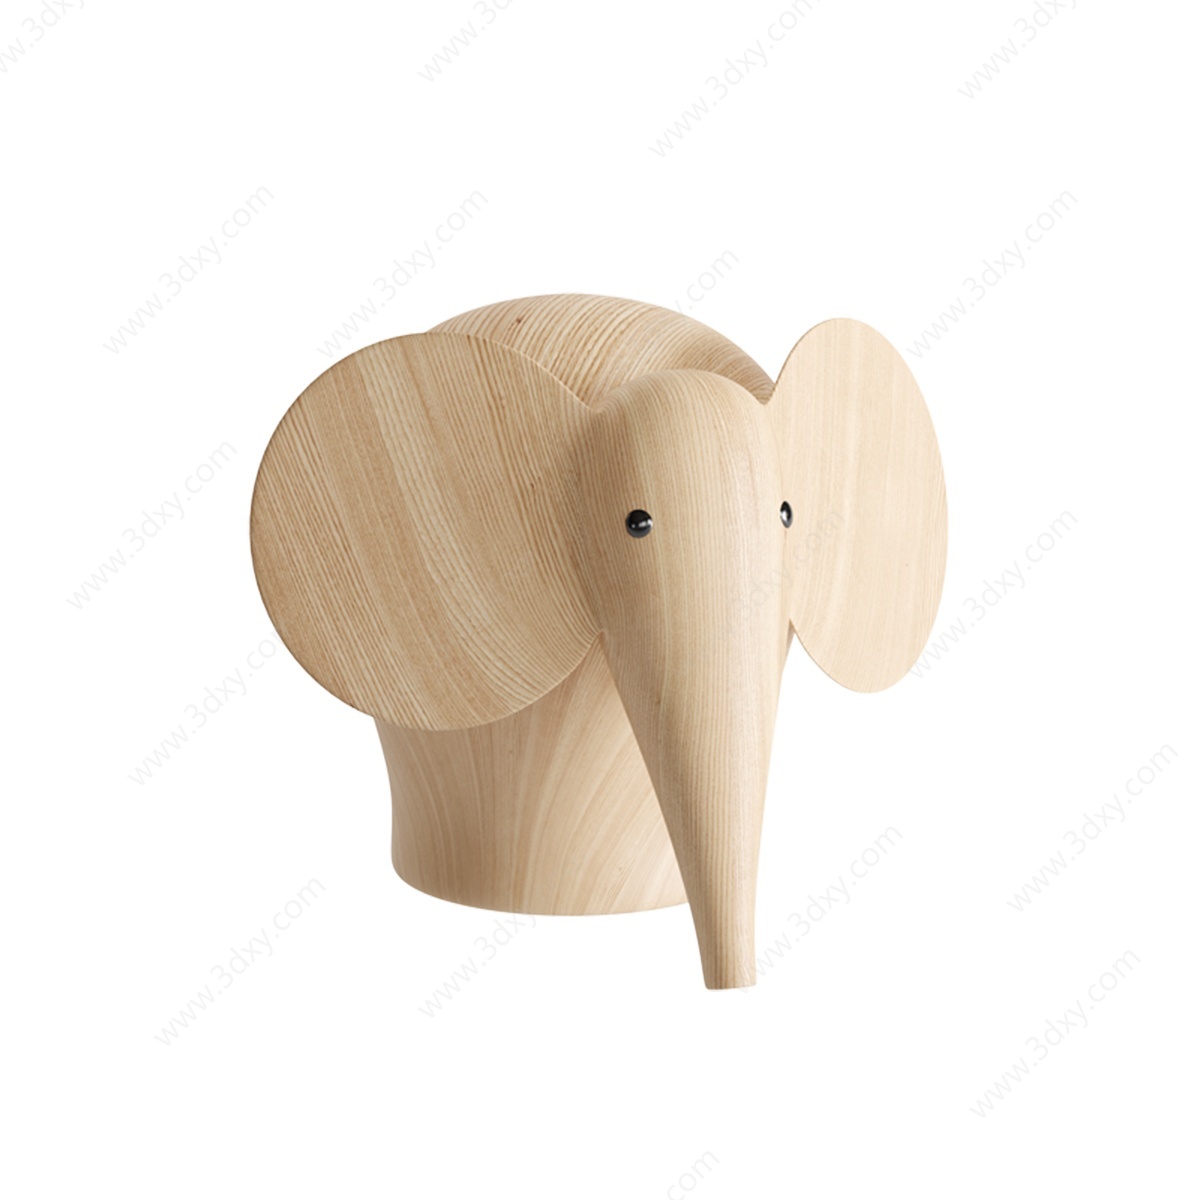 大象雕塑3D模型